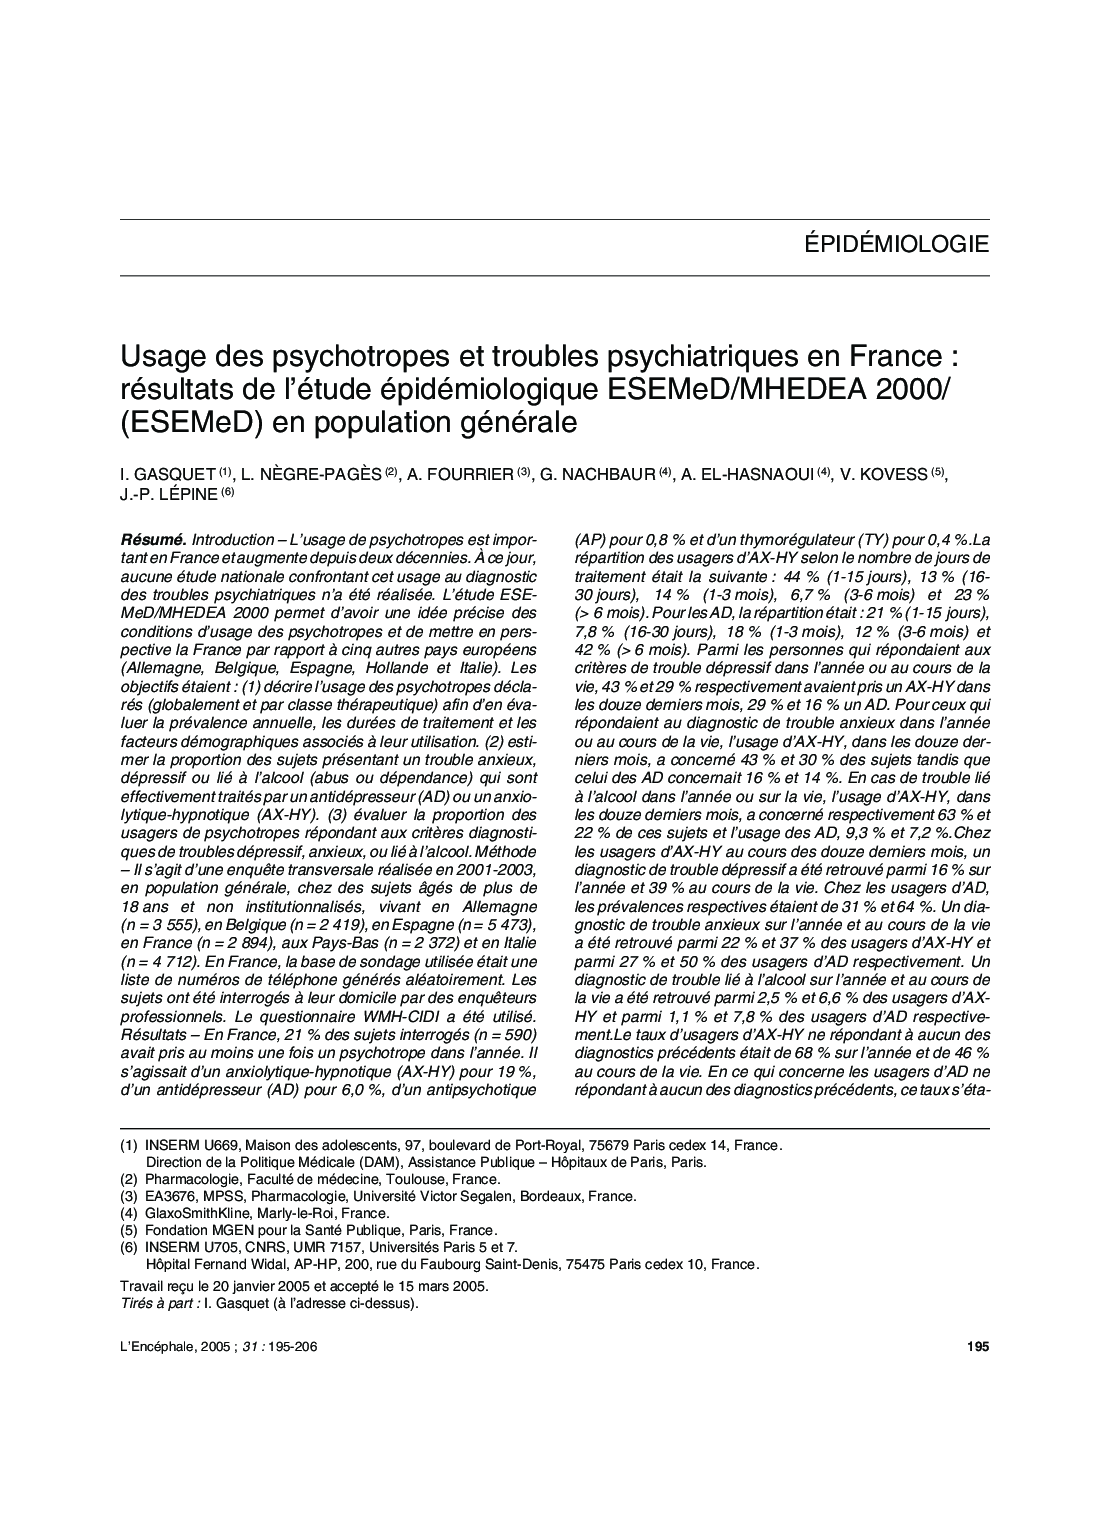 Usage des psychotropes et troubles psychiatriques en France : résultats de l'étude épidémiologique ESEMeD/MHEDEA 2000/ (ESEMeD) en population générale